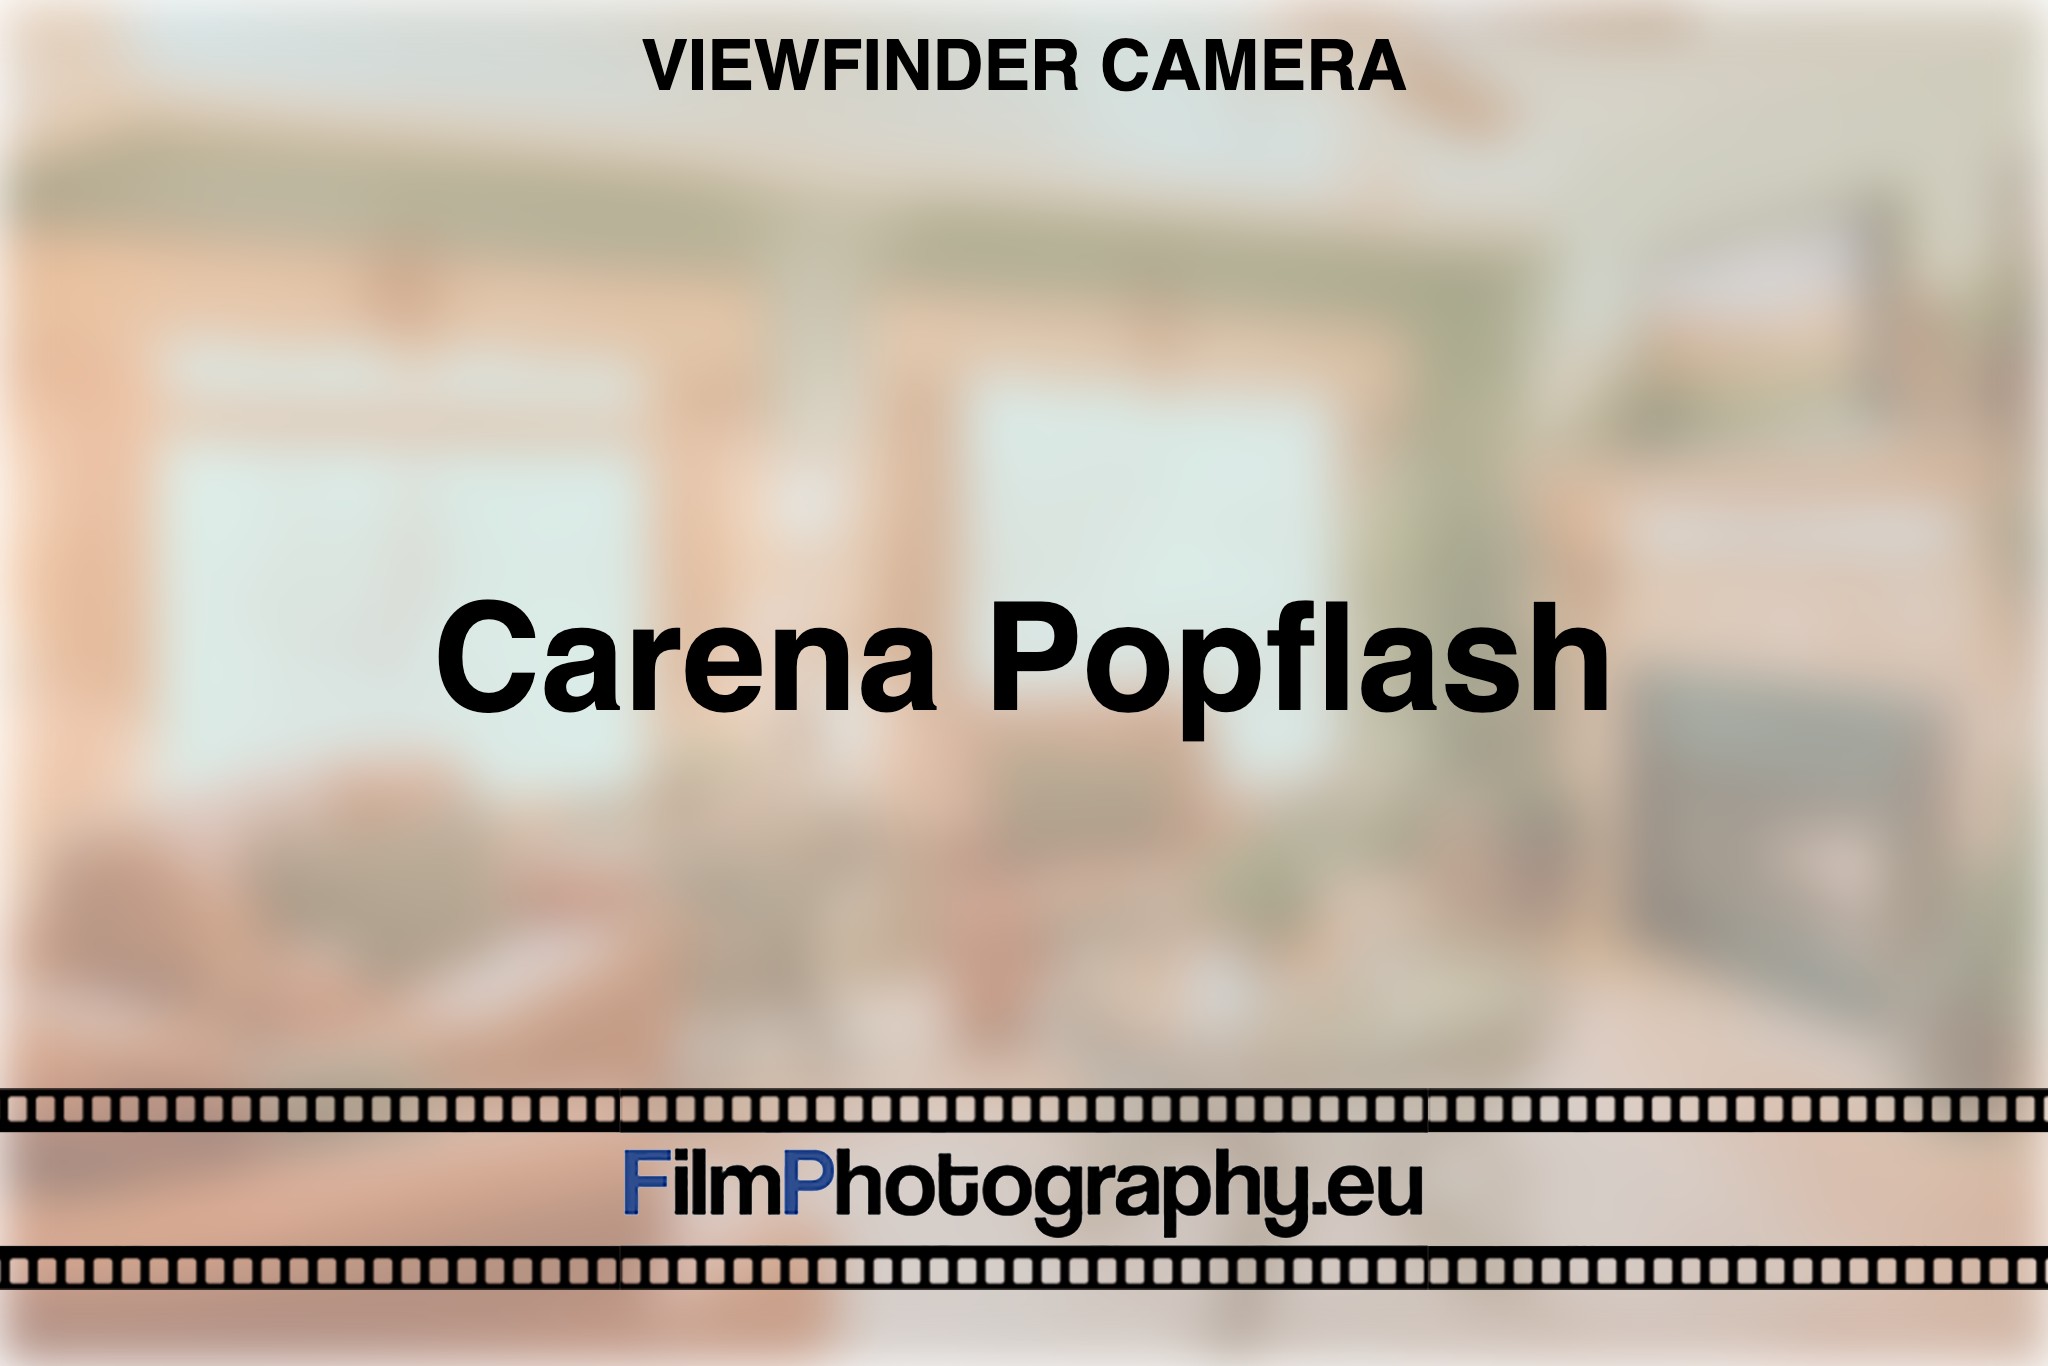 carena-popflash-viewfinder-camera-bnv